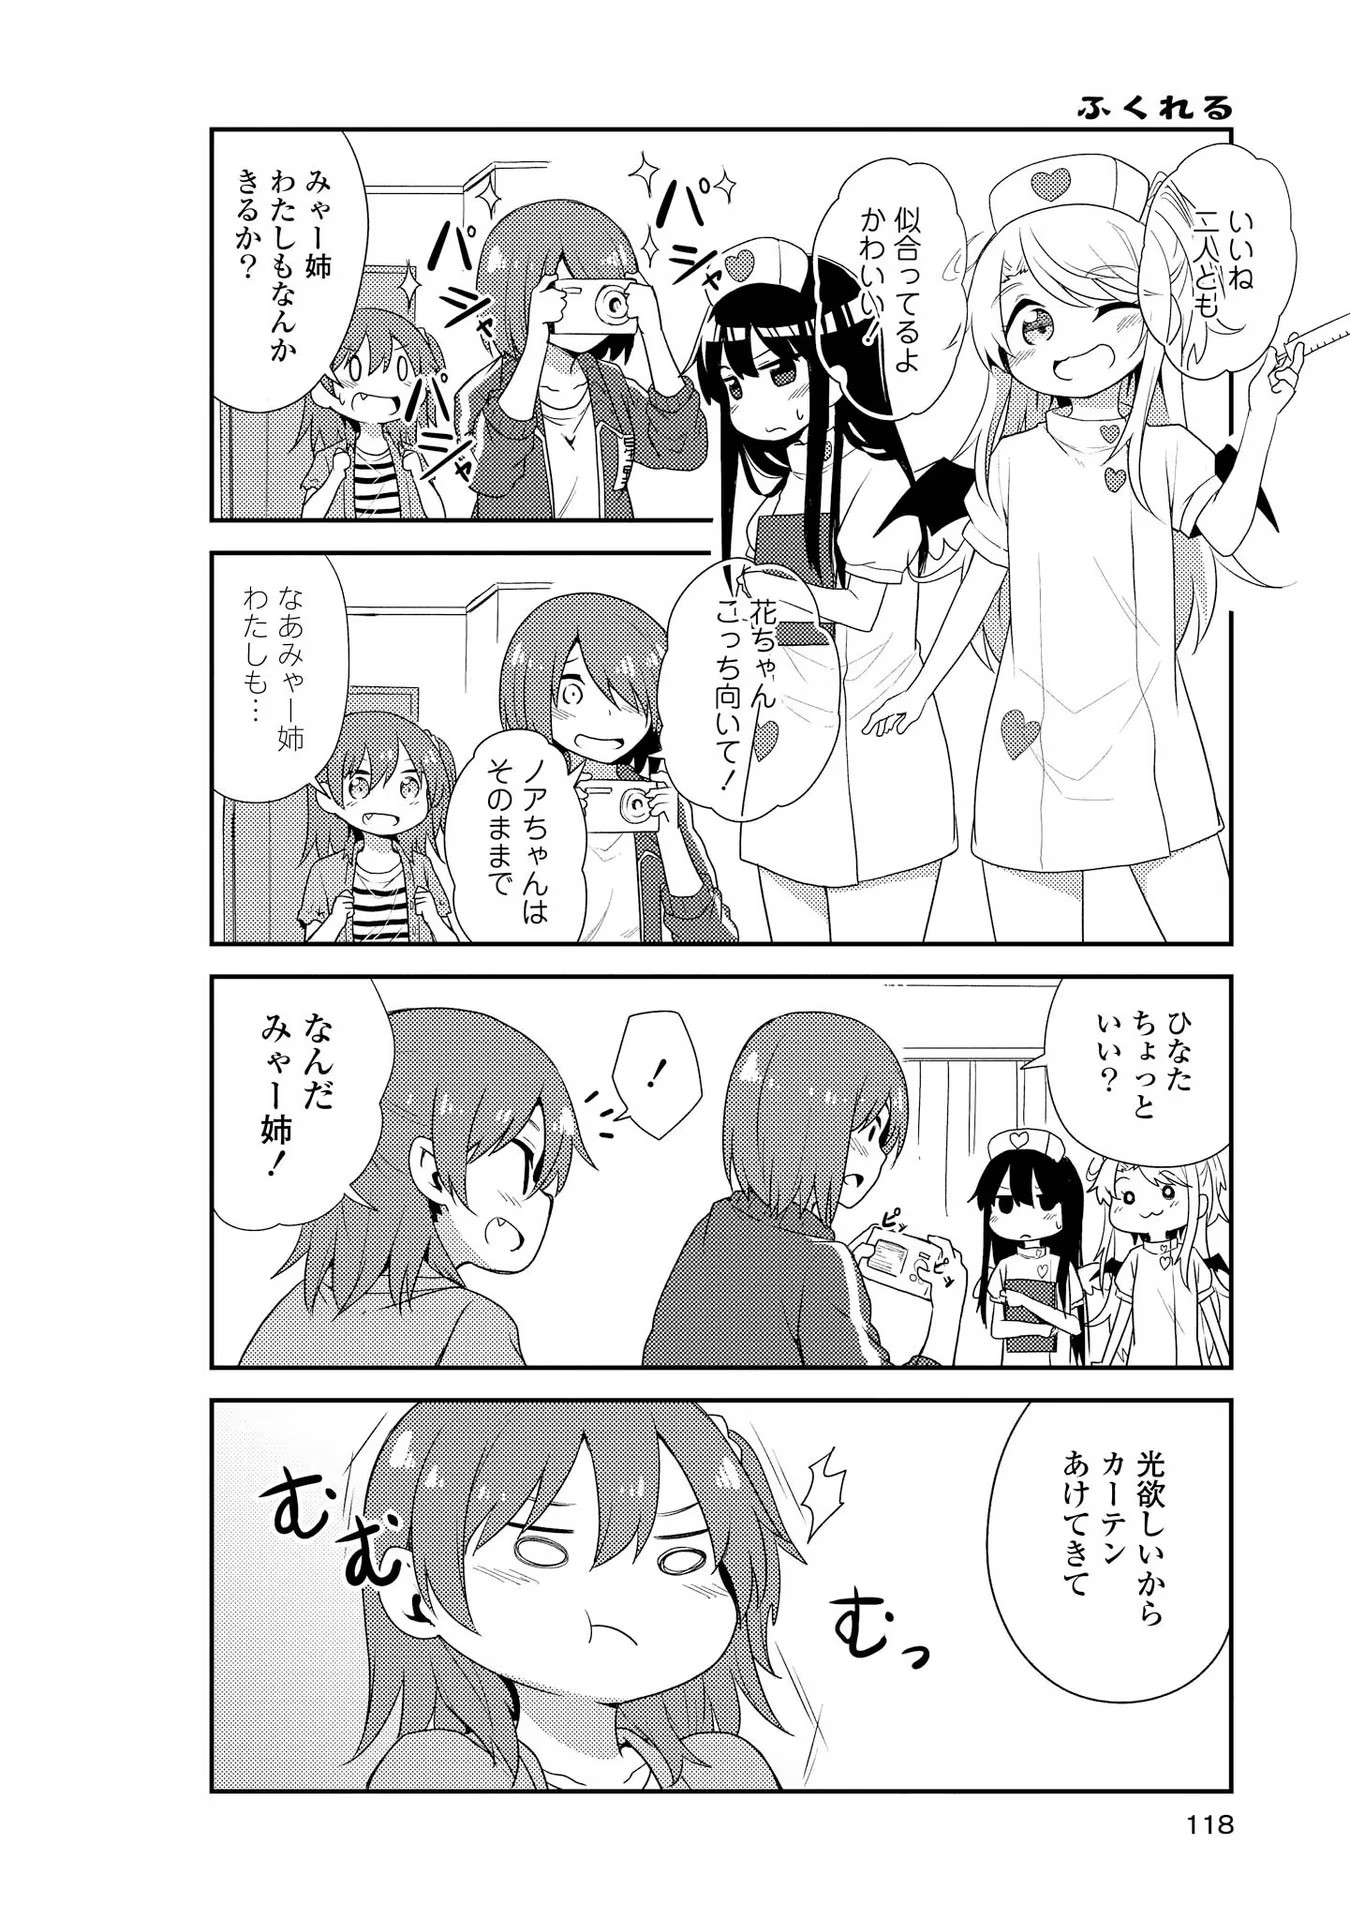 Watashi ni Tenshi ga Maiorita! - Chapter 8 - Page 4